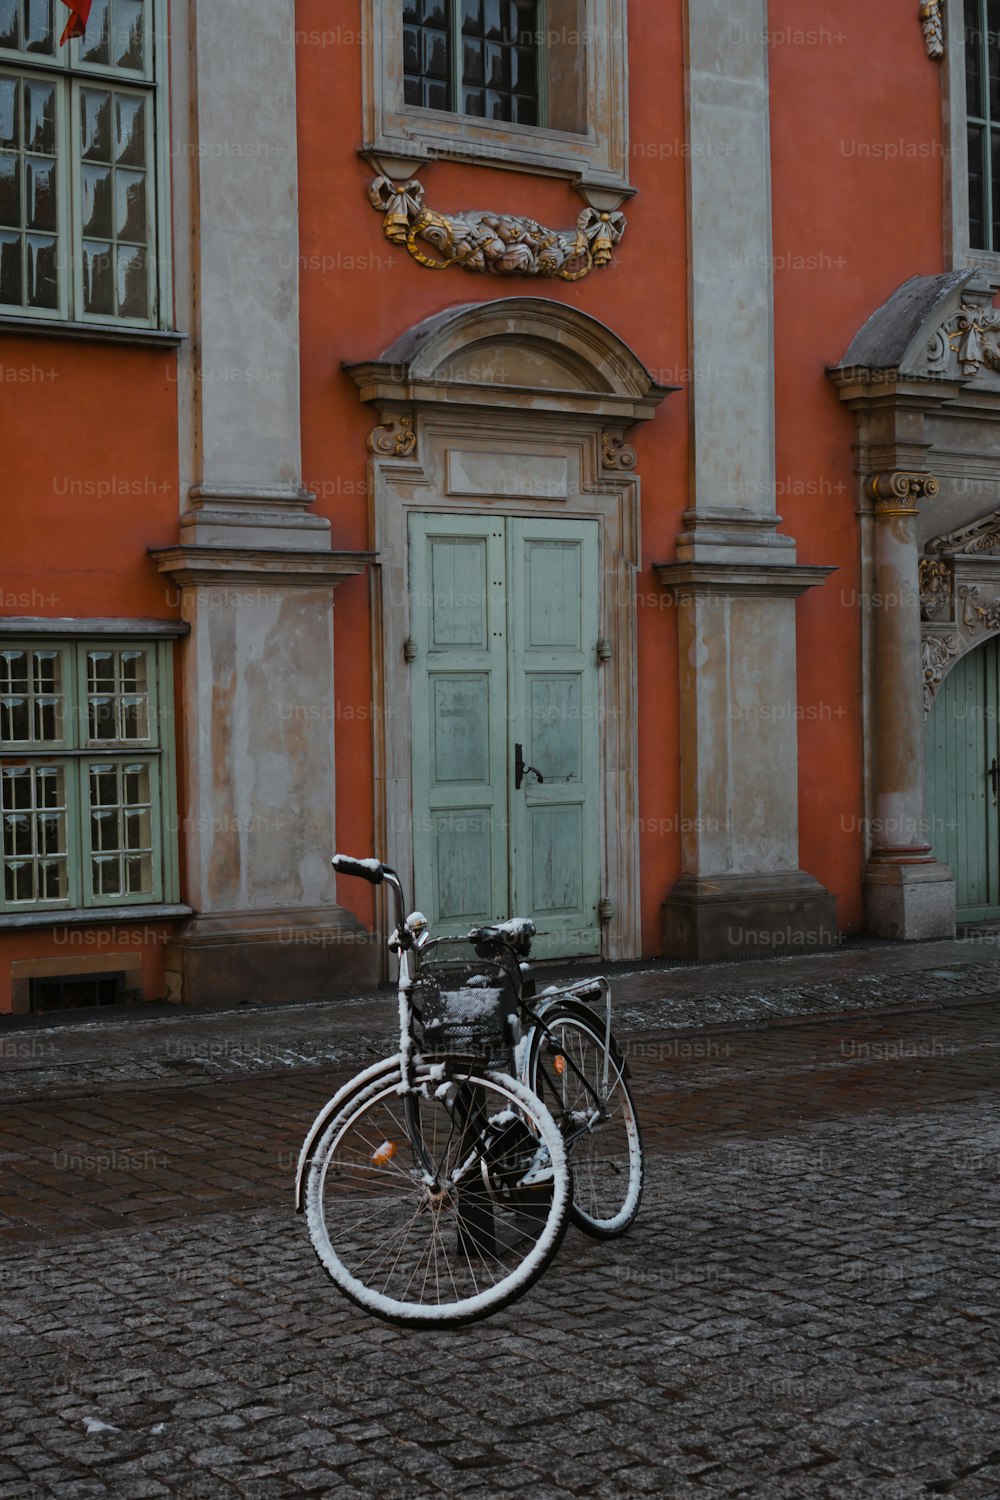 건물 앞에 주차된 자전거